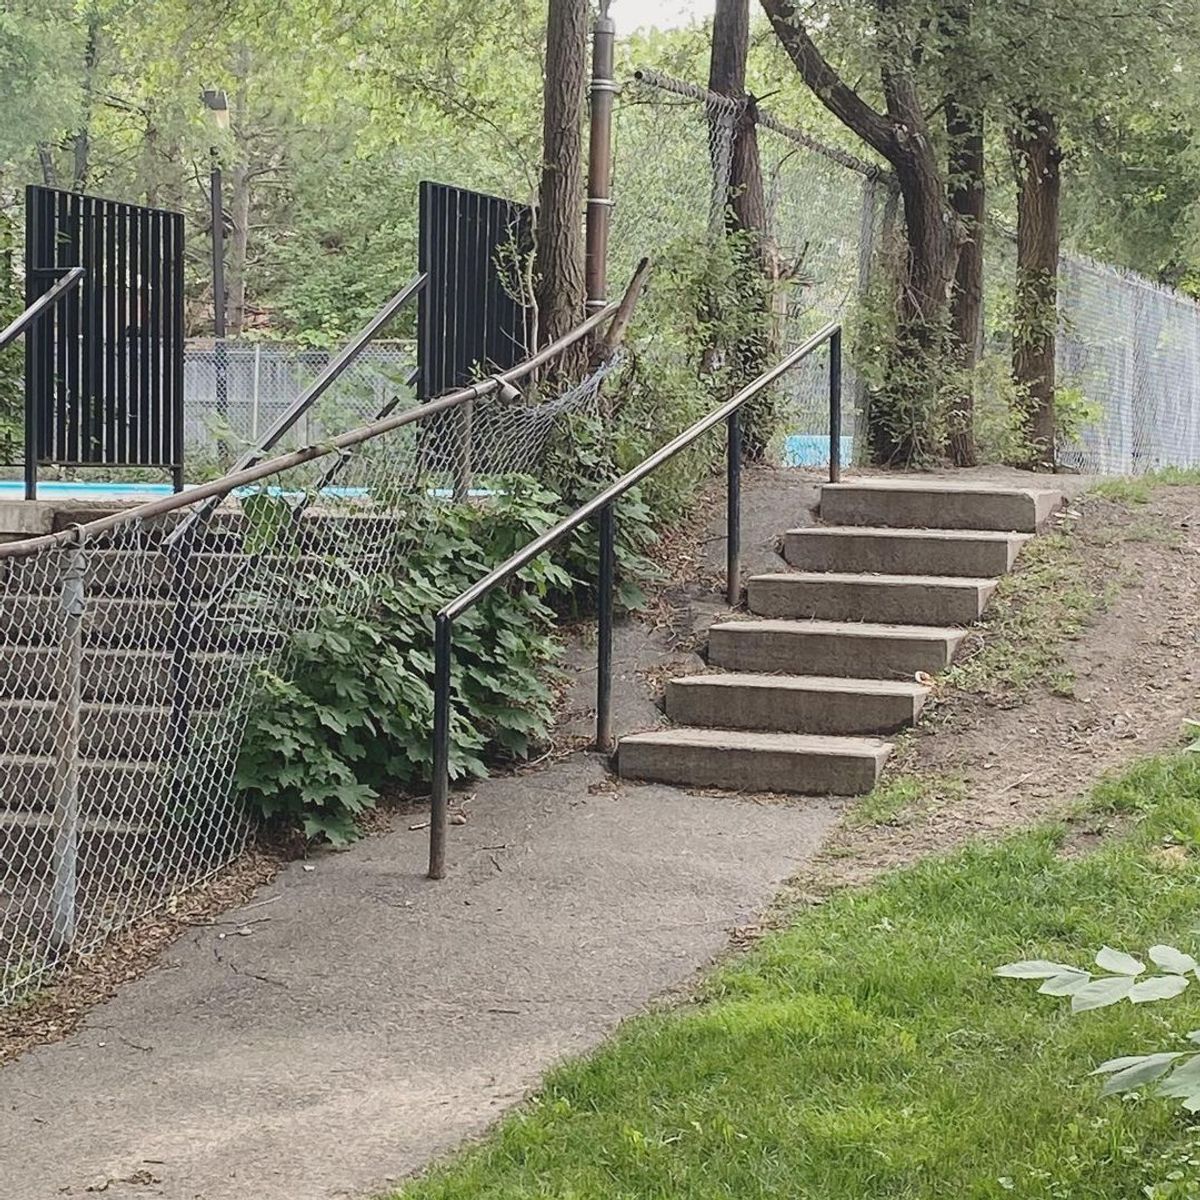 Image for skate spot Alvin Heights Park - Long 6 Stair Rail